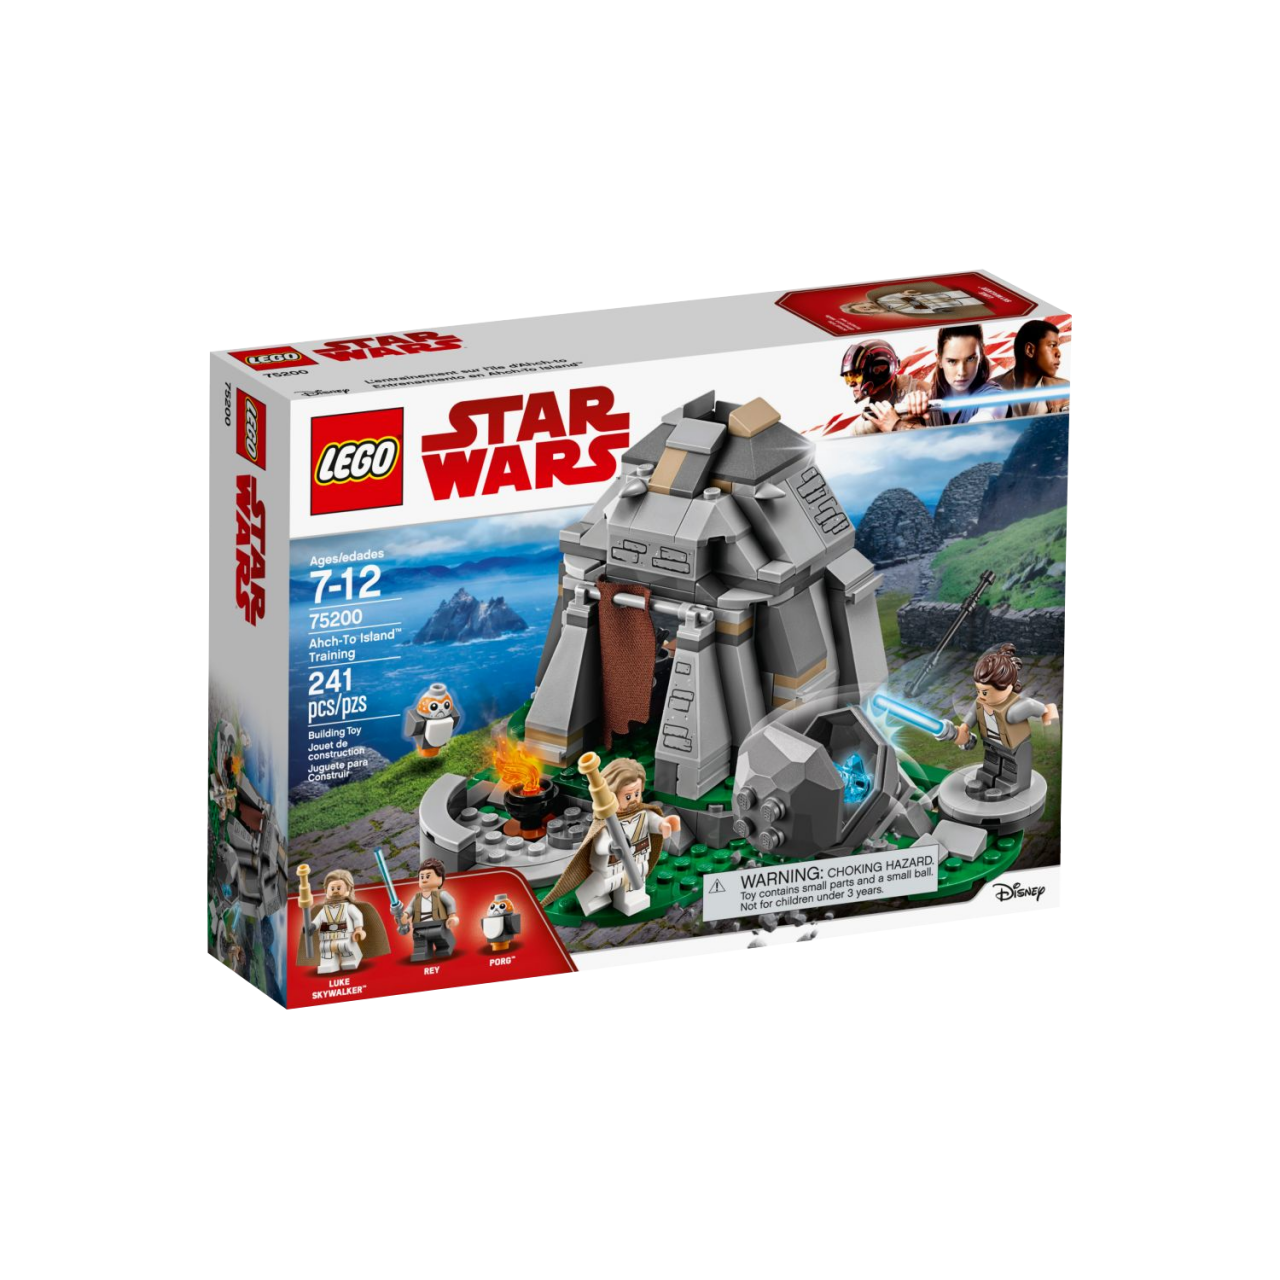 LEGO STAR WARS 75200 Ahch-To Island Training